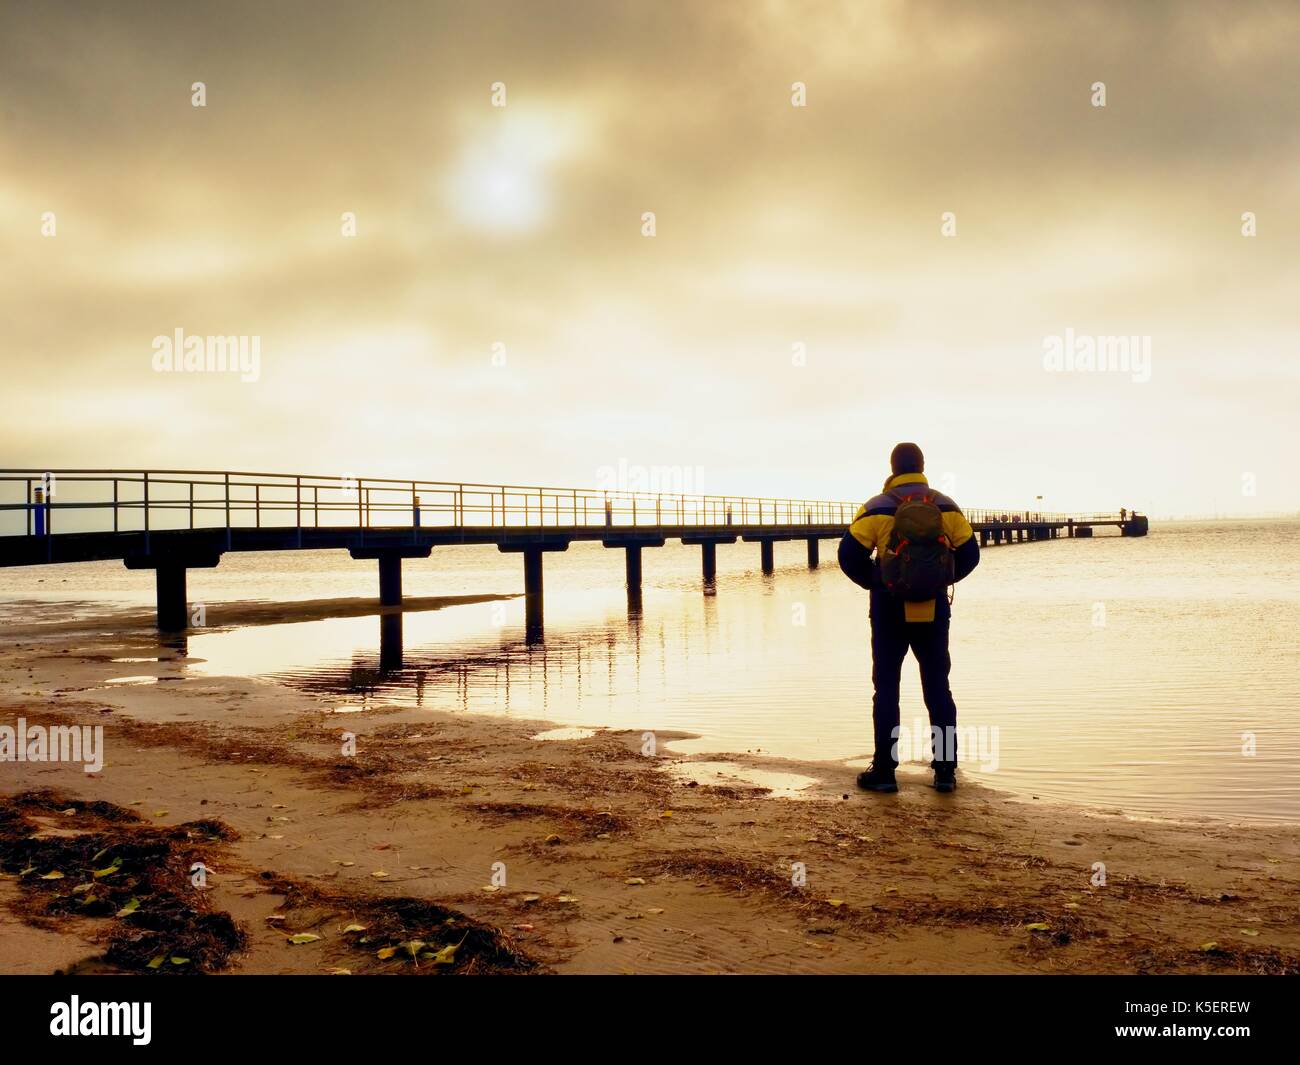 Rückansicht des Tourist in trekking Kleidung am Strand am Pier. Gradient Sunset View Hintergrund Stockfoto